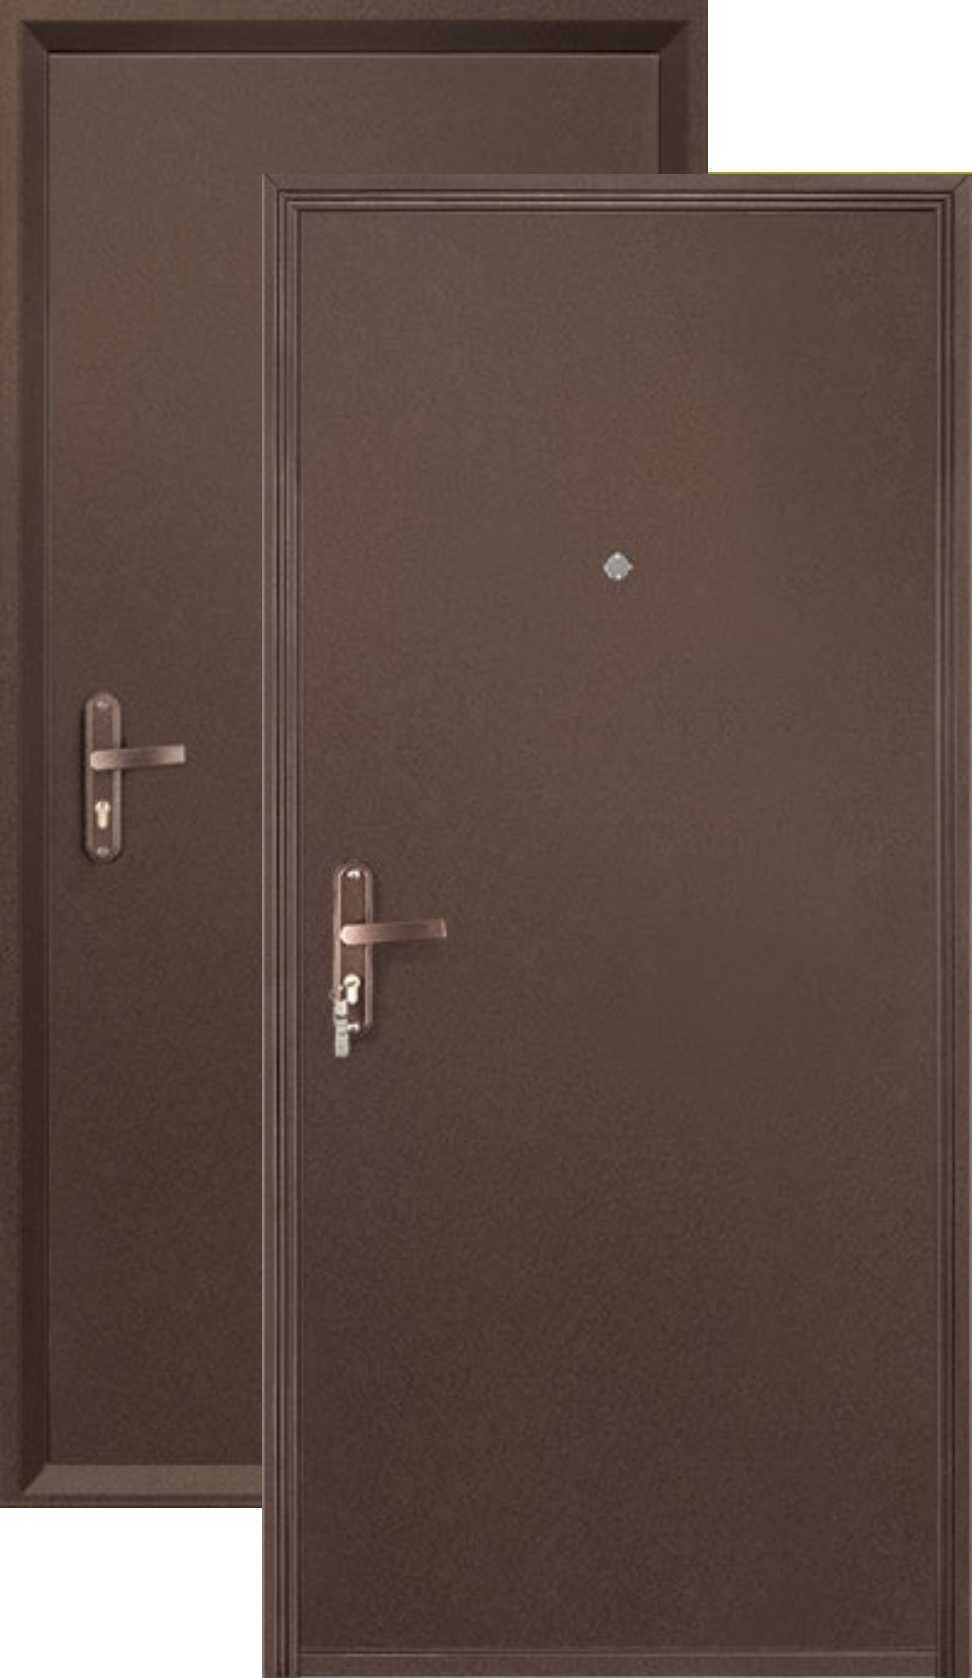 Купить дверь металлическую белгороде. Дверь профи мет мет Промет. Металлическая дверь профи Промет. Дверь входная стальная Промет профи BMD, медный антик, 850*2050мм, правая. Дверь профи BMD-2050/850/R антик медь.